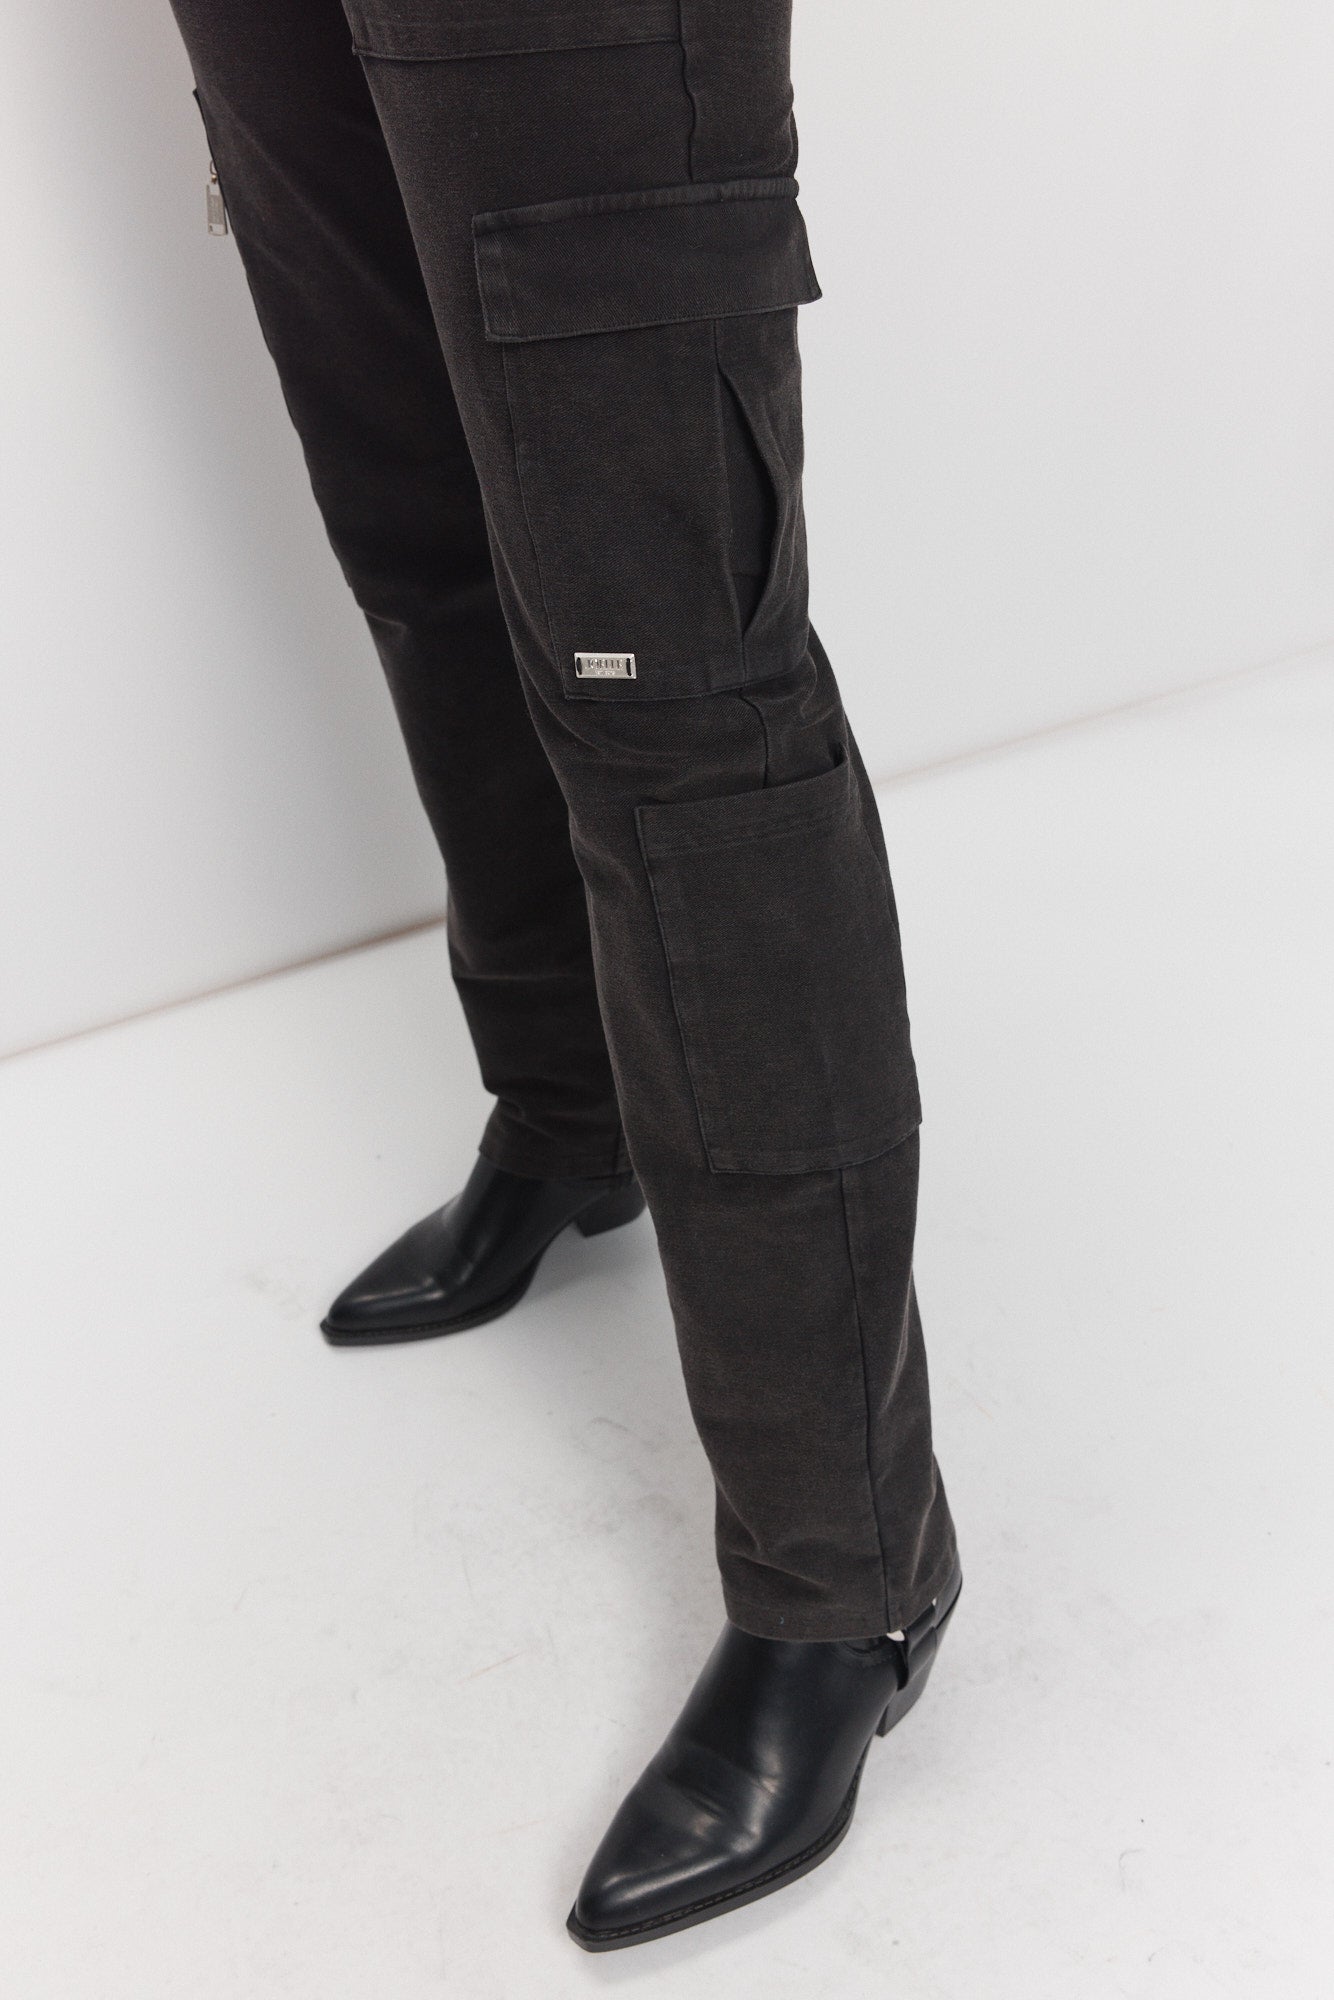 Pantalon gris tie-dye cargo style militaire | Pat JOELLE Collection